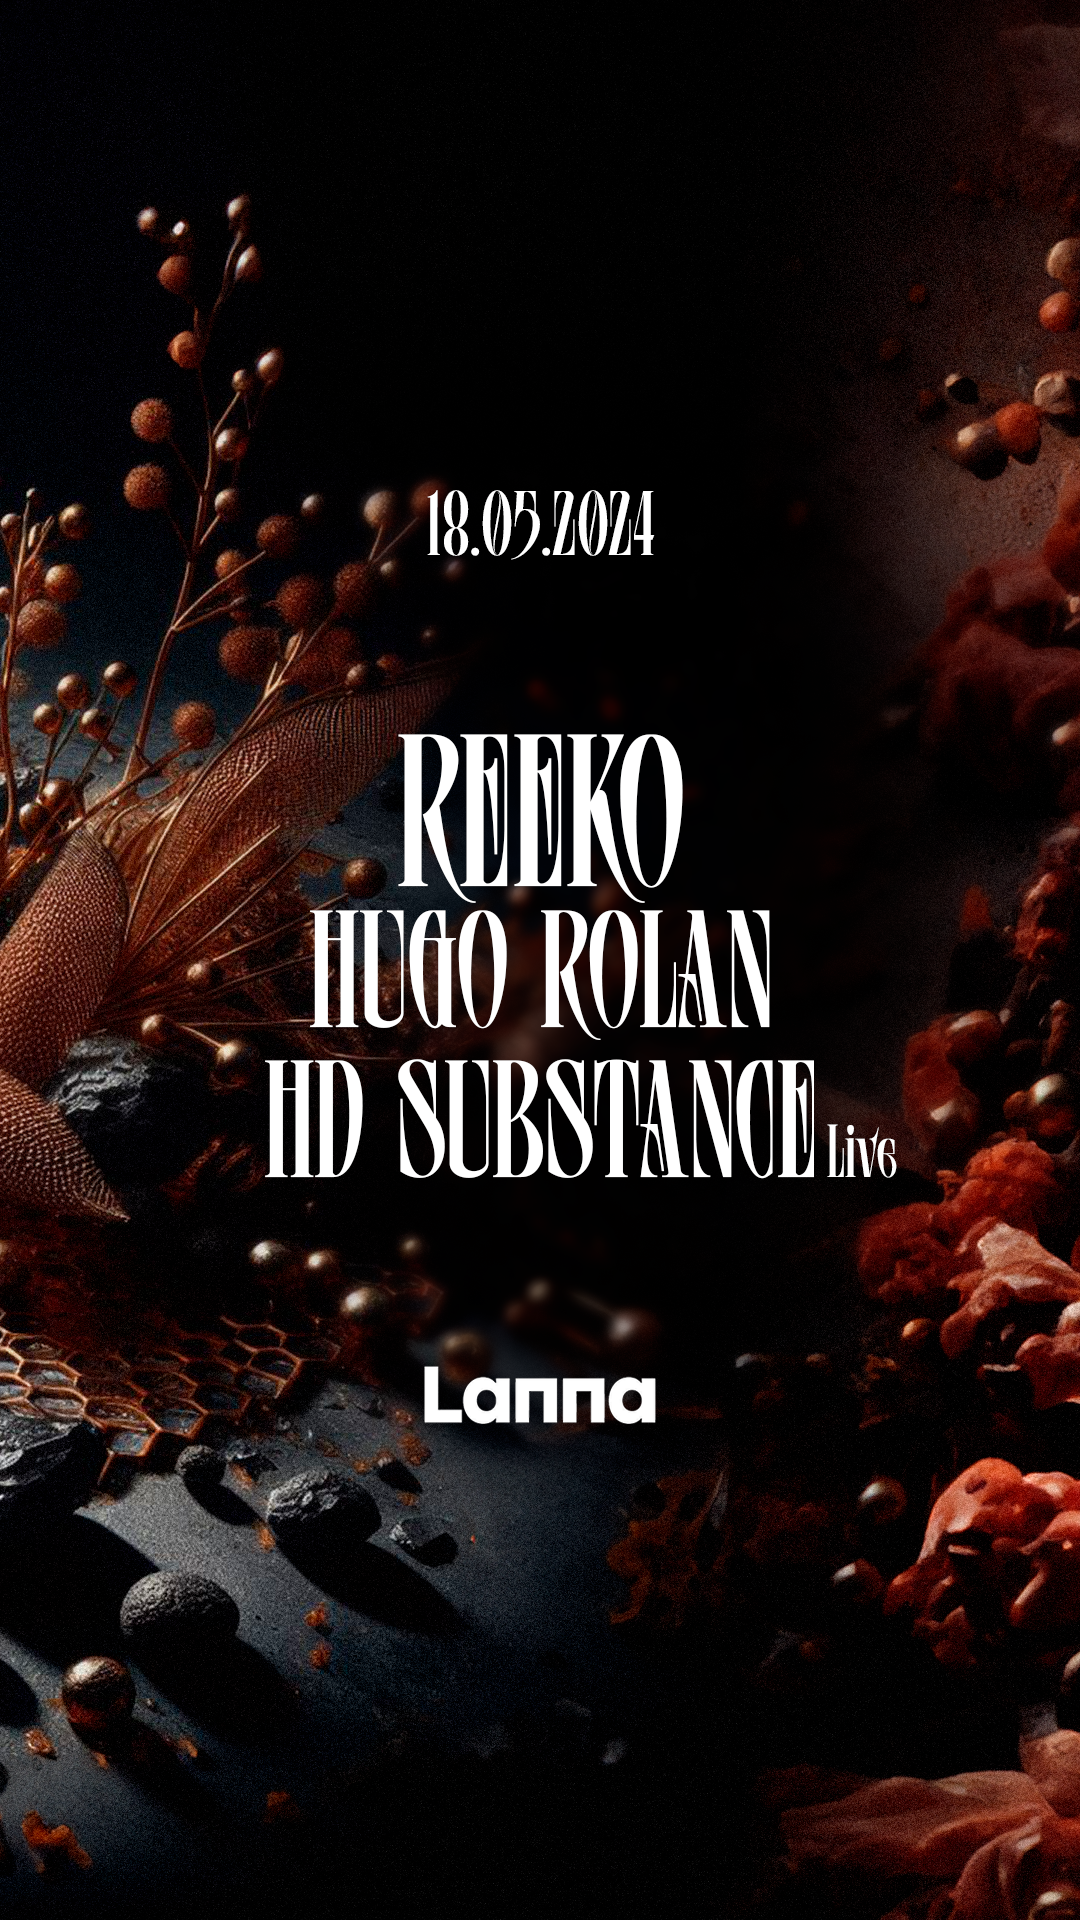 Lanna Club presenta Reeko, Hd Substance, Hugo Rolan - フライヤー表